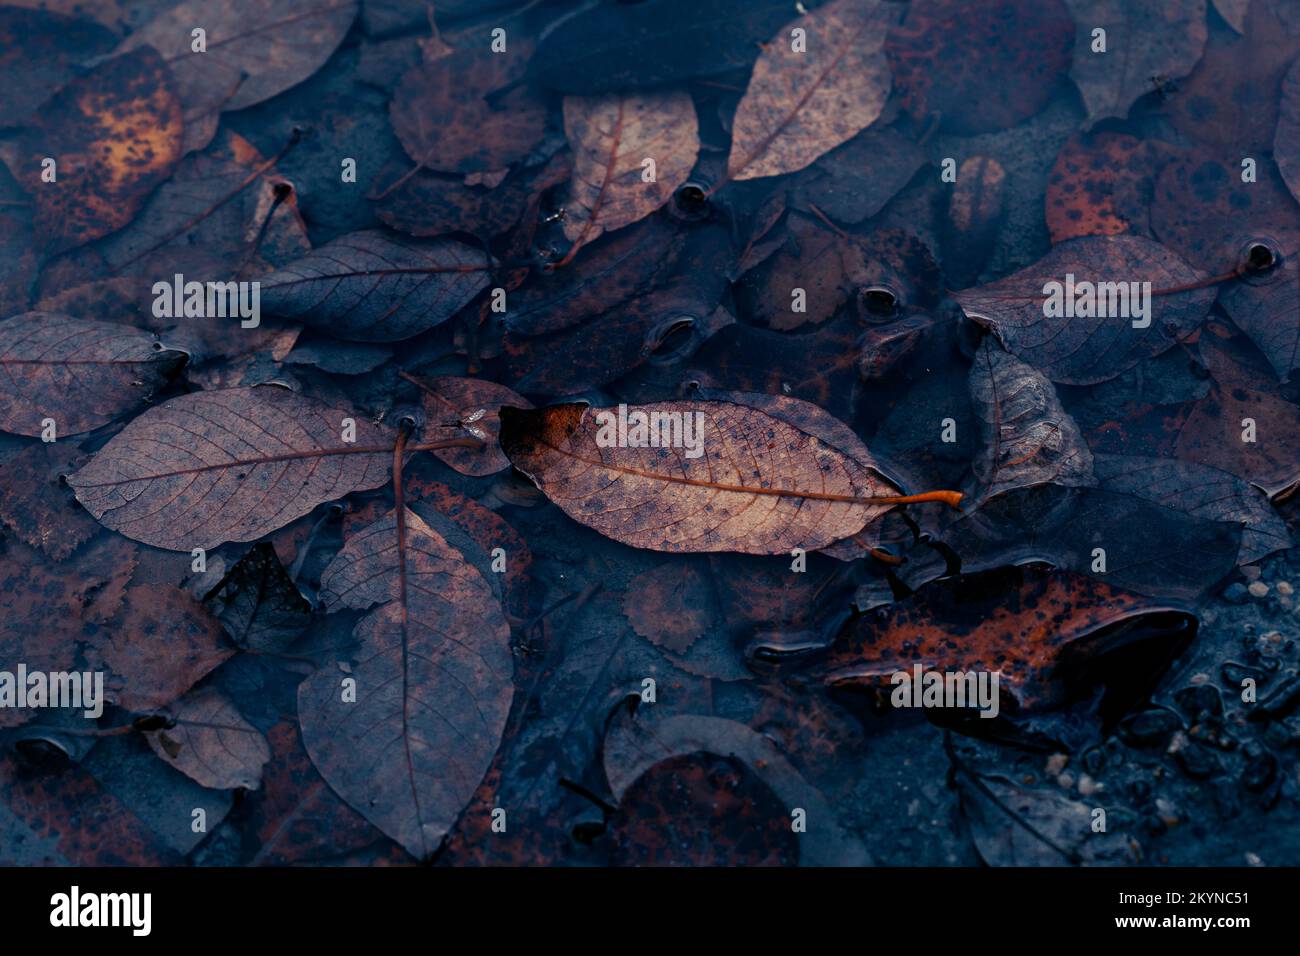 dark moody feuille d'automne décolorée dans le fond de l'eau, les plantes d'automne brun pourrissent Banque D'Images